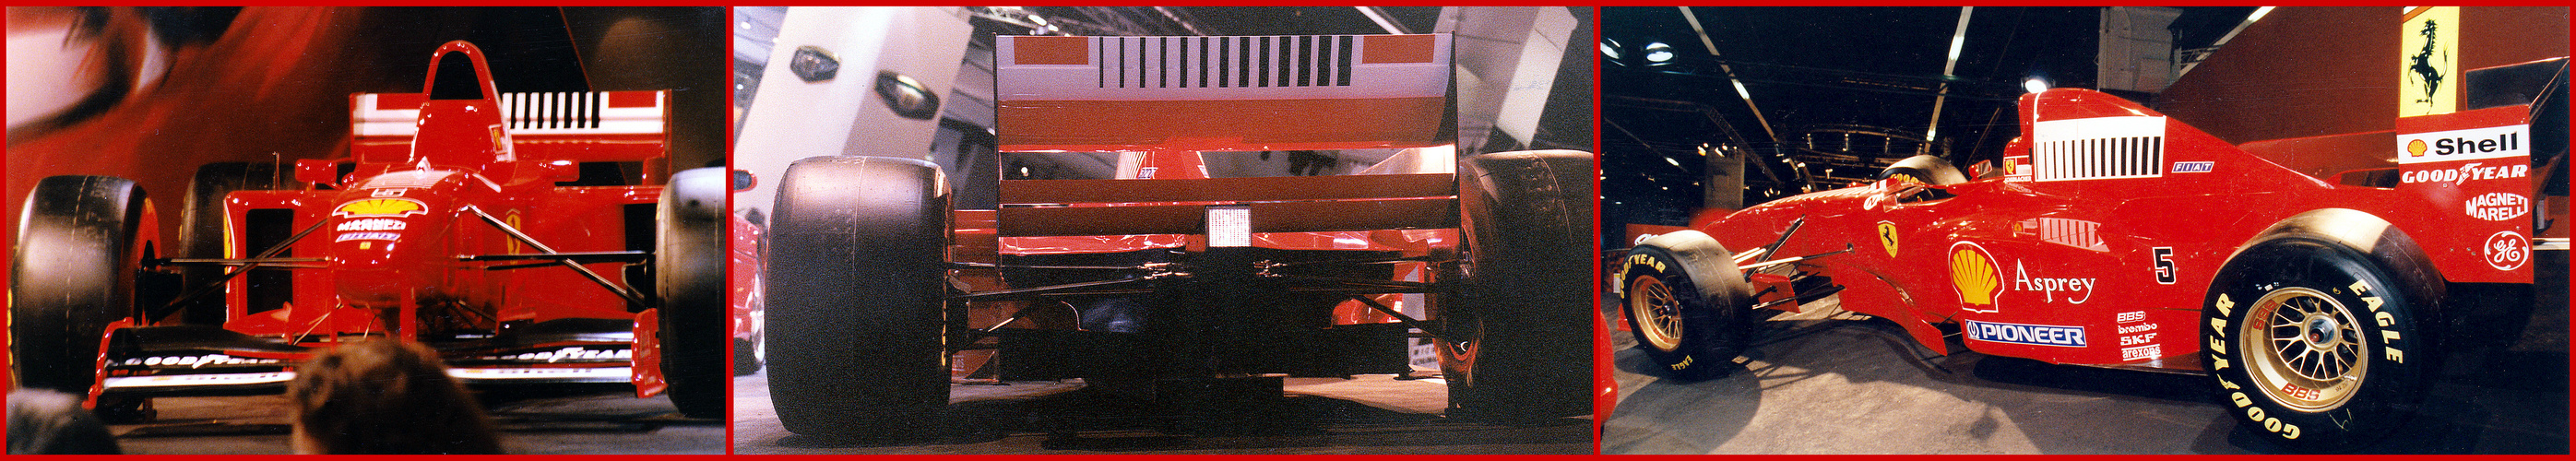 Ferrari F310B von Michael Schumacher, 1997